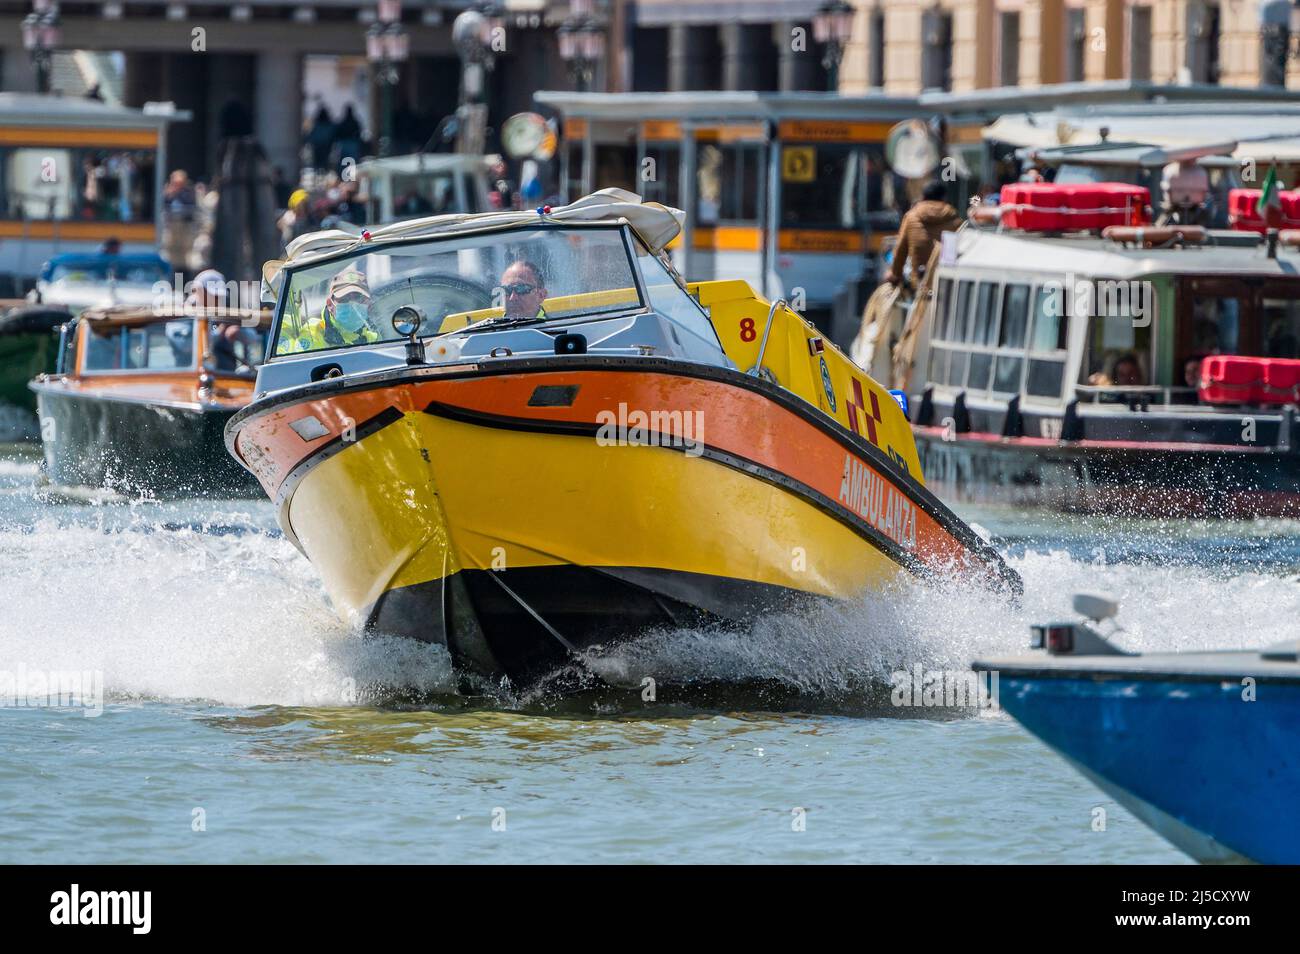 Un ambulance se précipite vers un incident à la gare principale - les canaux sont les artères principales portant toutes les formes de transport d'eau - Venise au début de la Biennale di Venezia en 2022. Banque D'Images